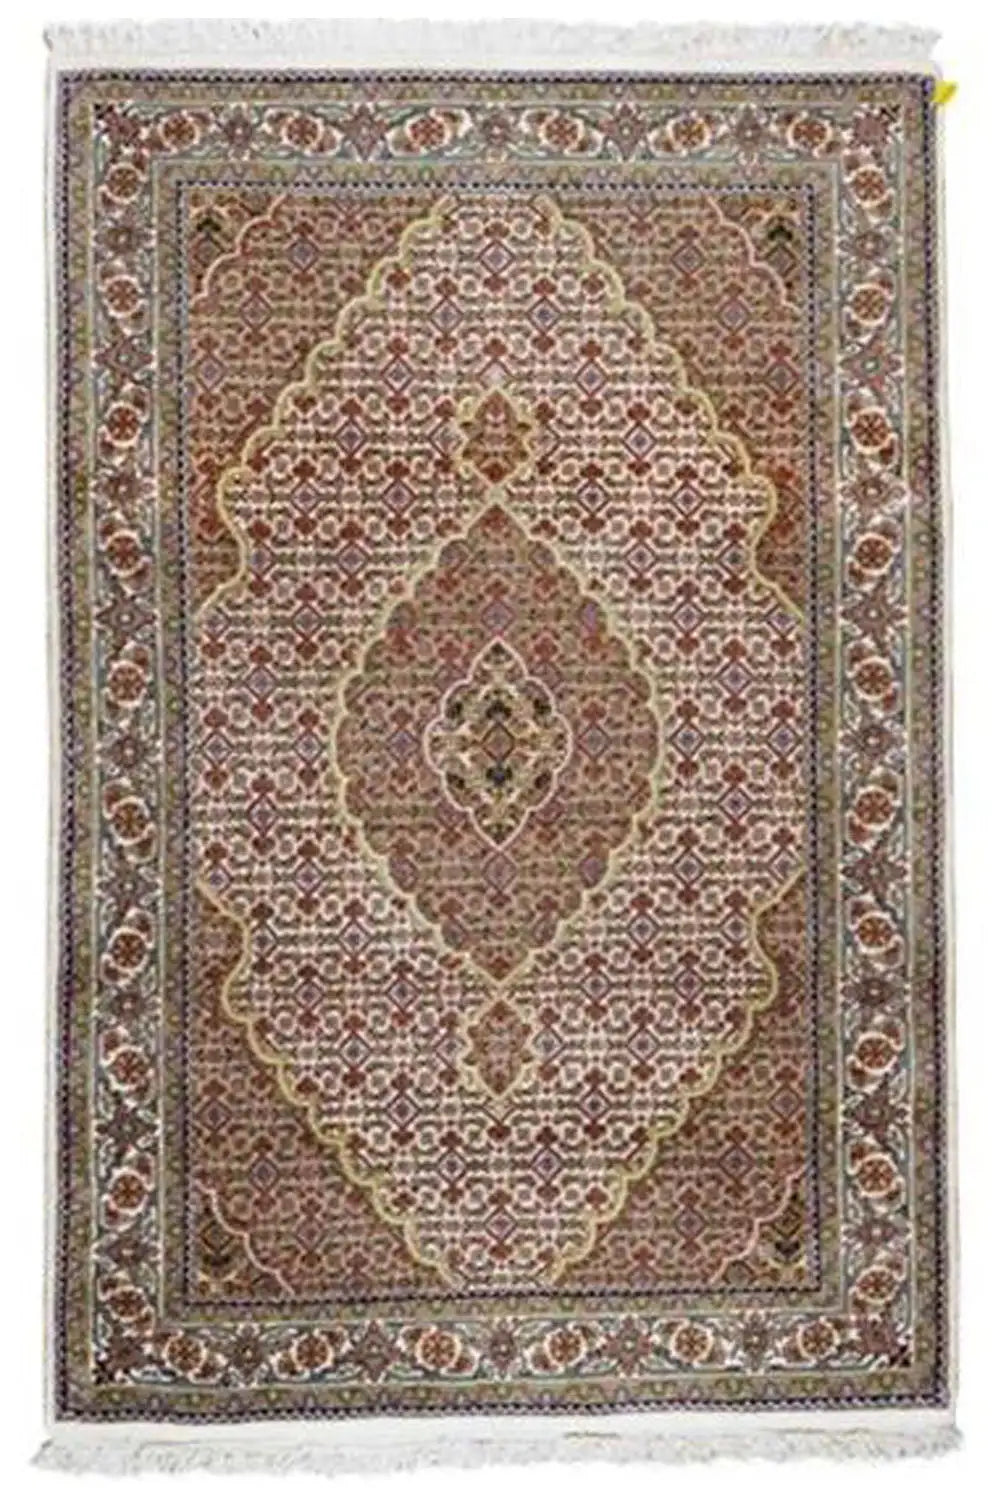 Täbriz - Mahi (185x122cm) - German Carpet Shop